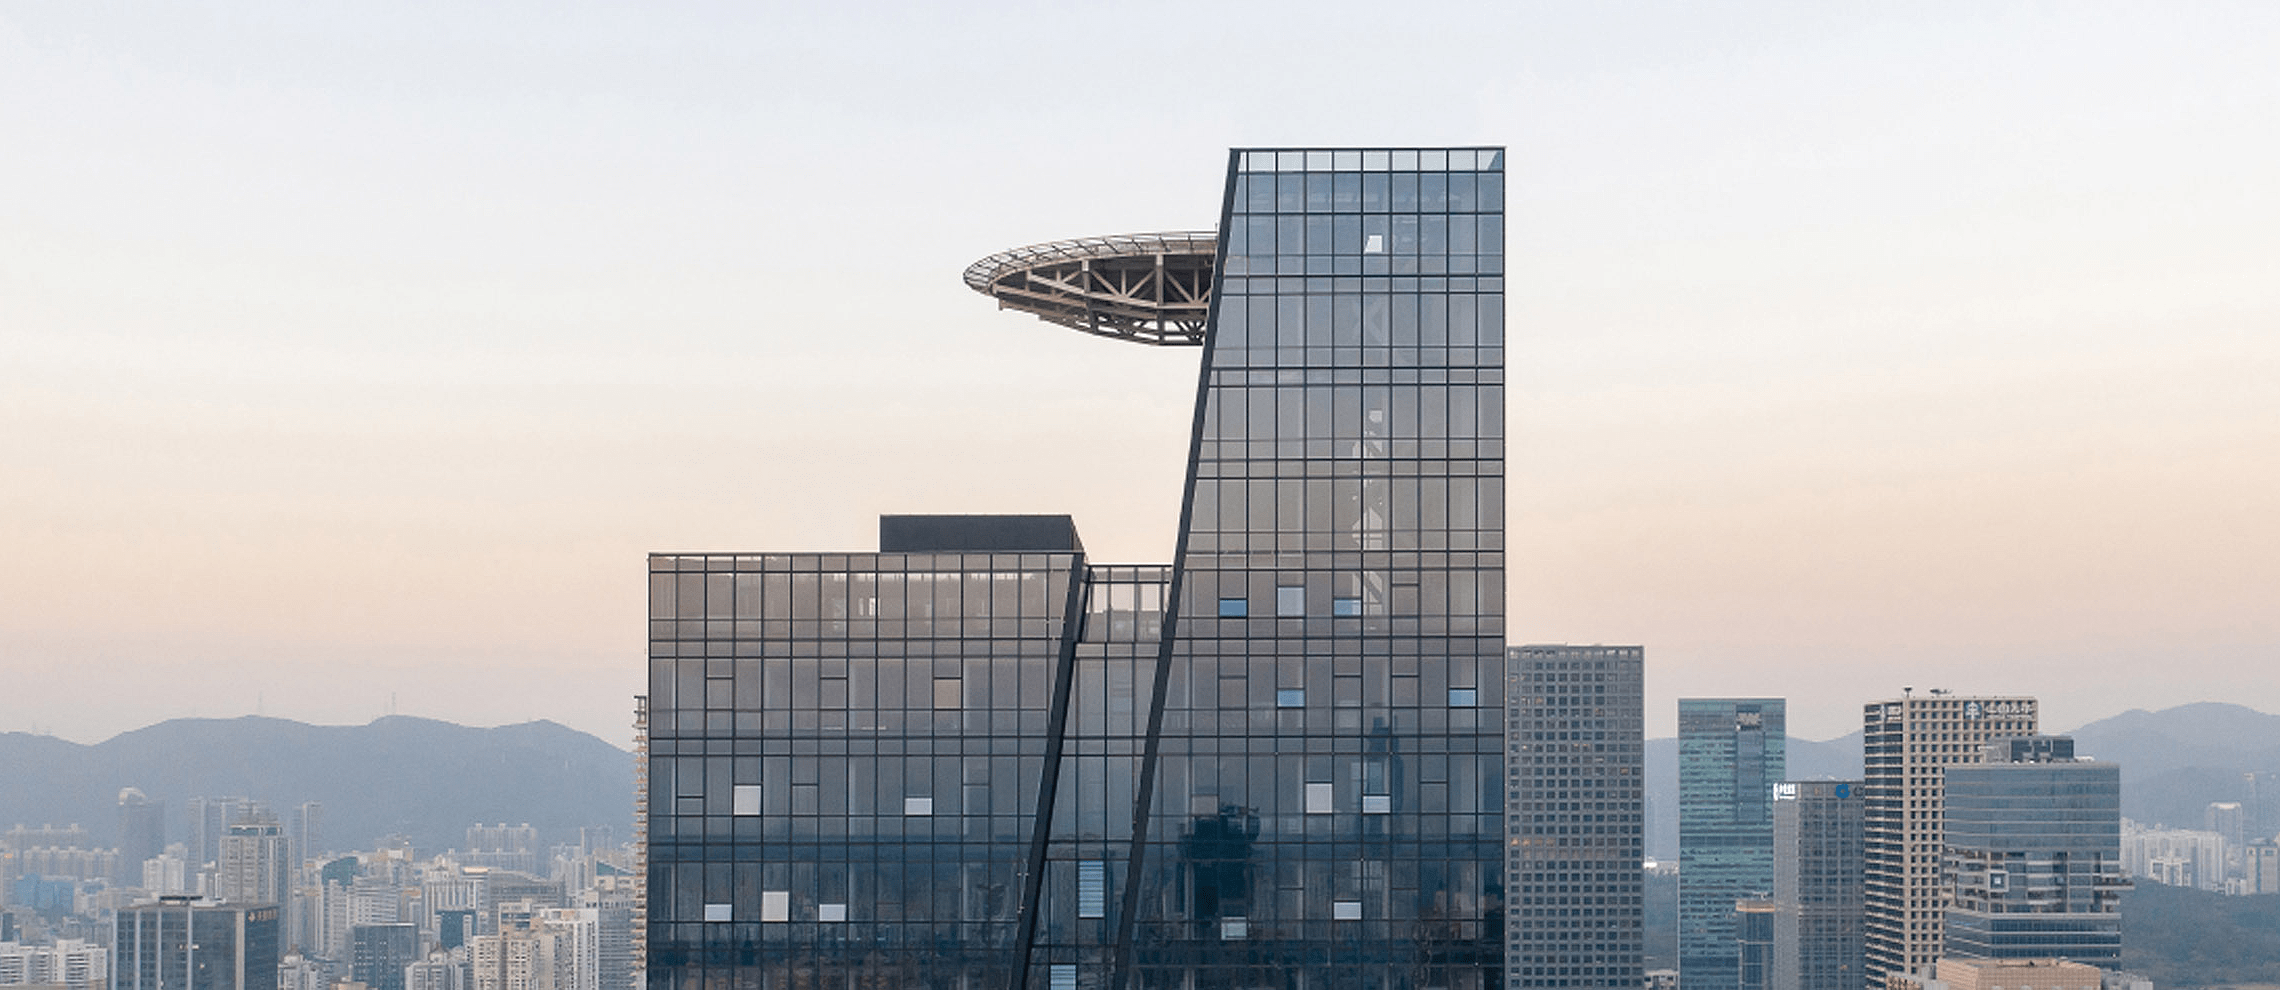 高228米,深圳天际线上新成员——国信证券大厦